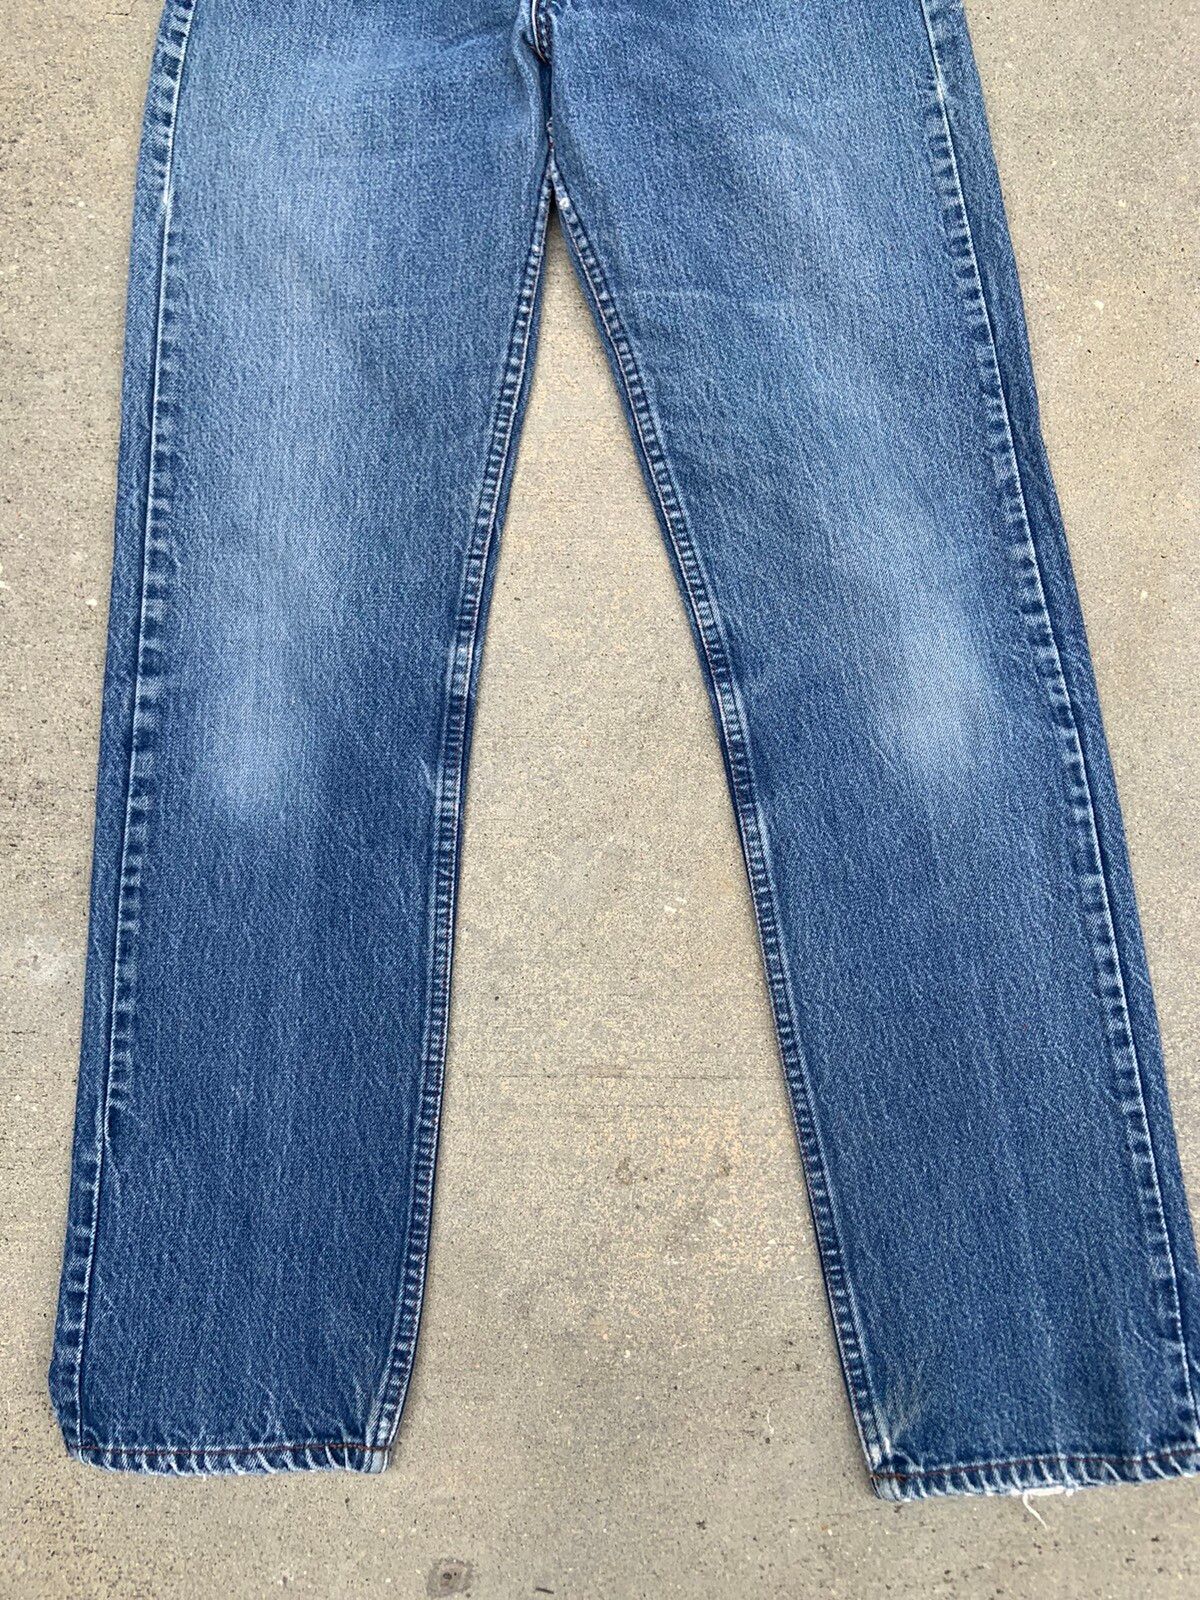 Vintage Vintage levis sf 207 orange tab denim jeans Size US 30 / EU 46 - 2 Preview